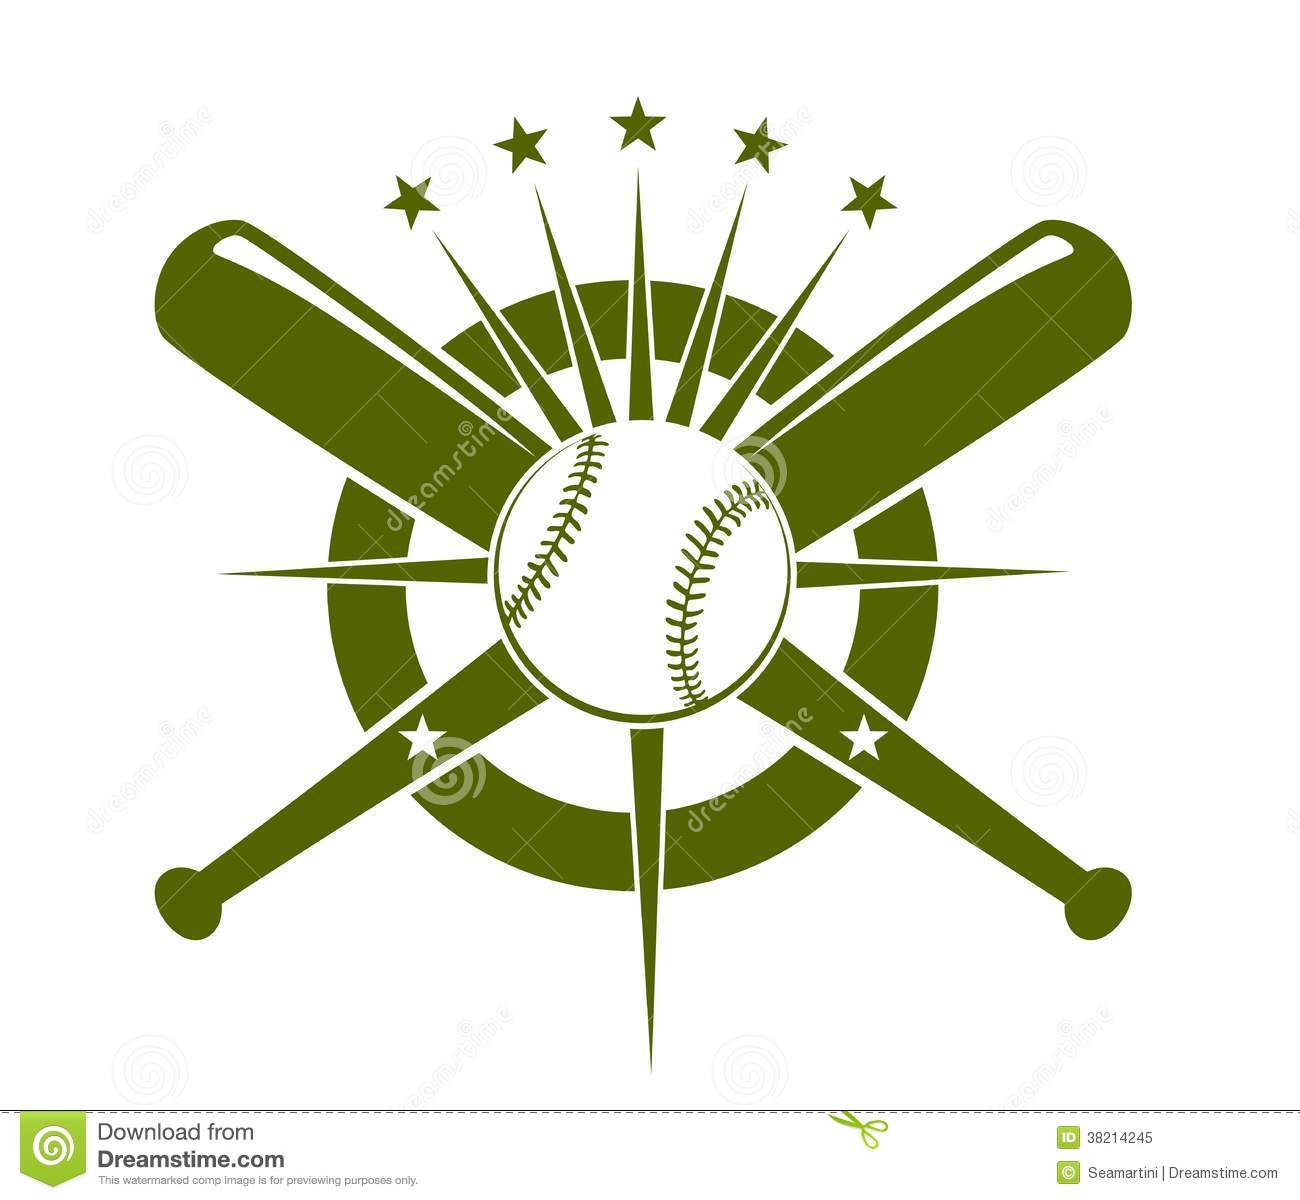 Baseball championship icon or .